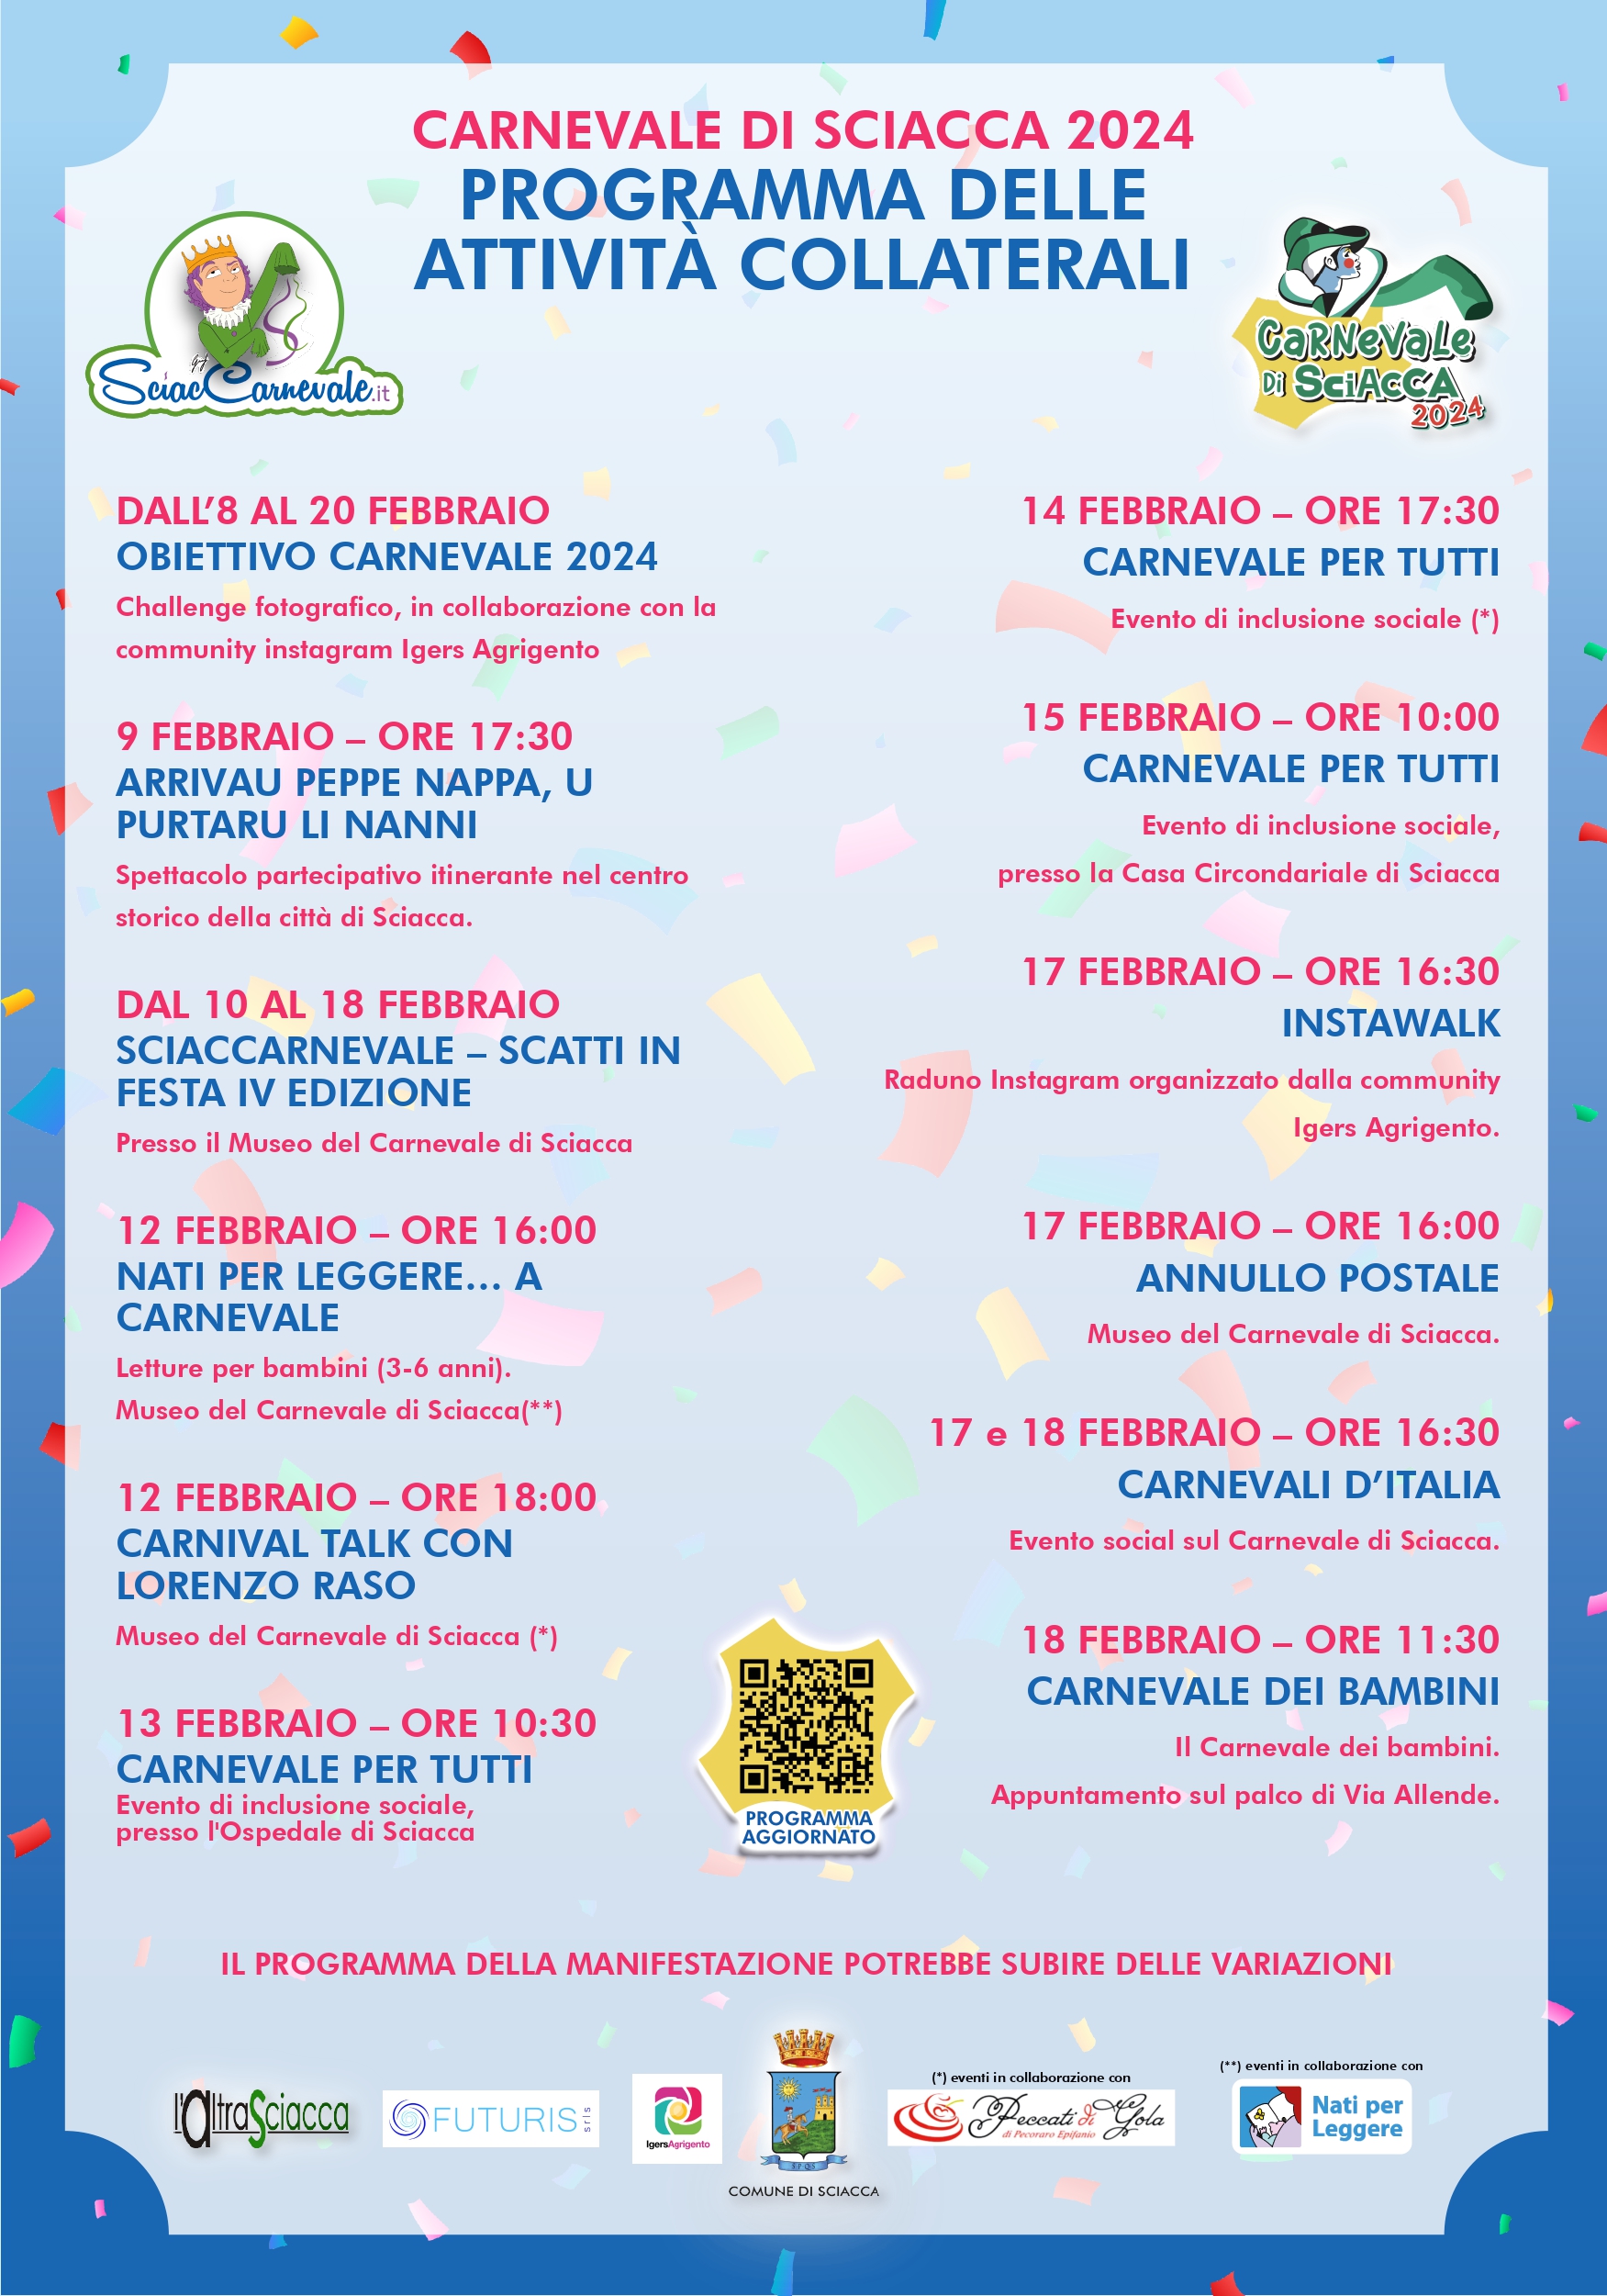 Il calendario degli eventi collaterali aggiornato alle nuove date del Carnevale di Sciacca